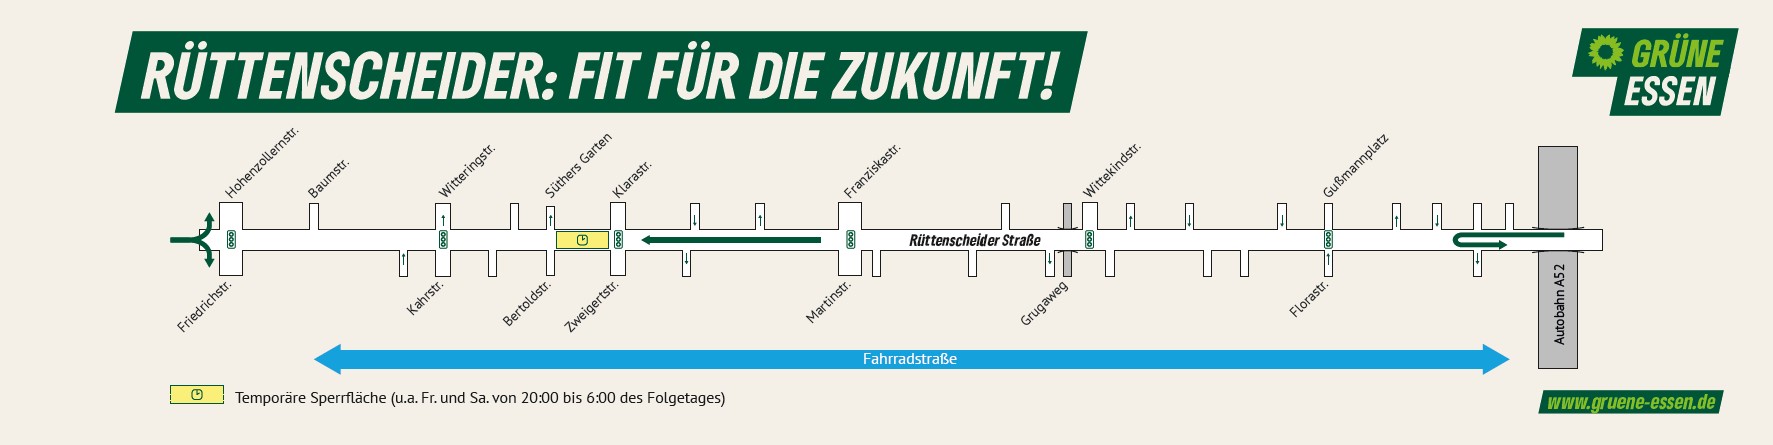 Plan der Verwaltungsvorlage Rüttenscheiderstrasse